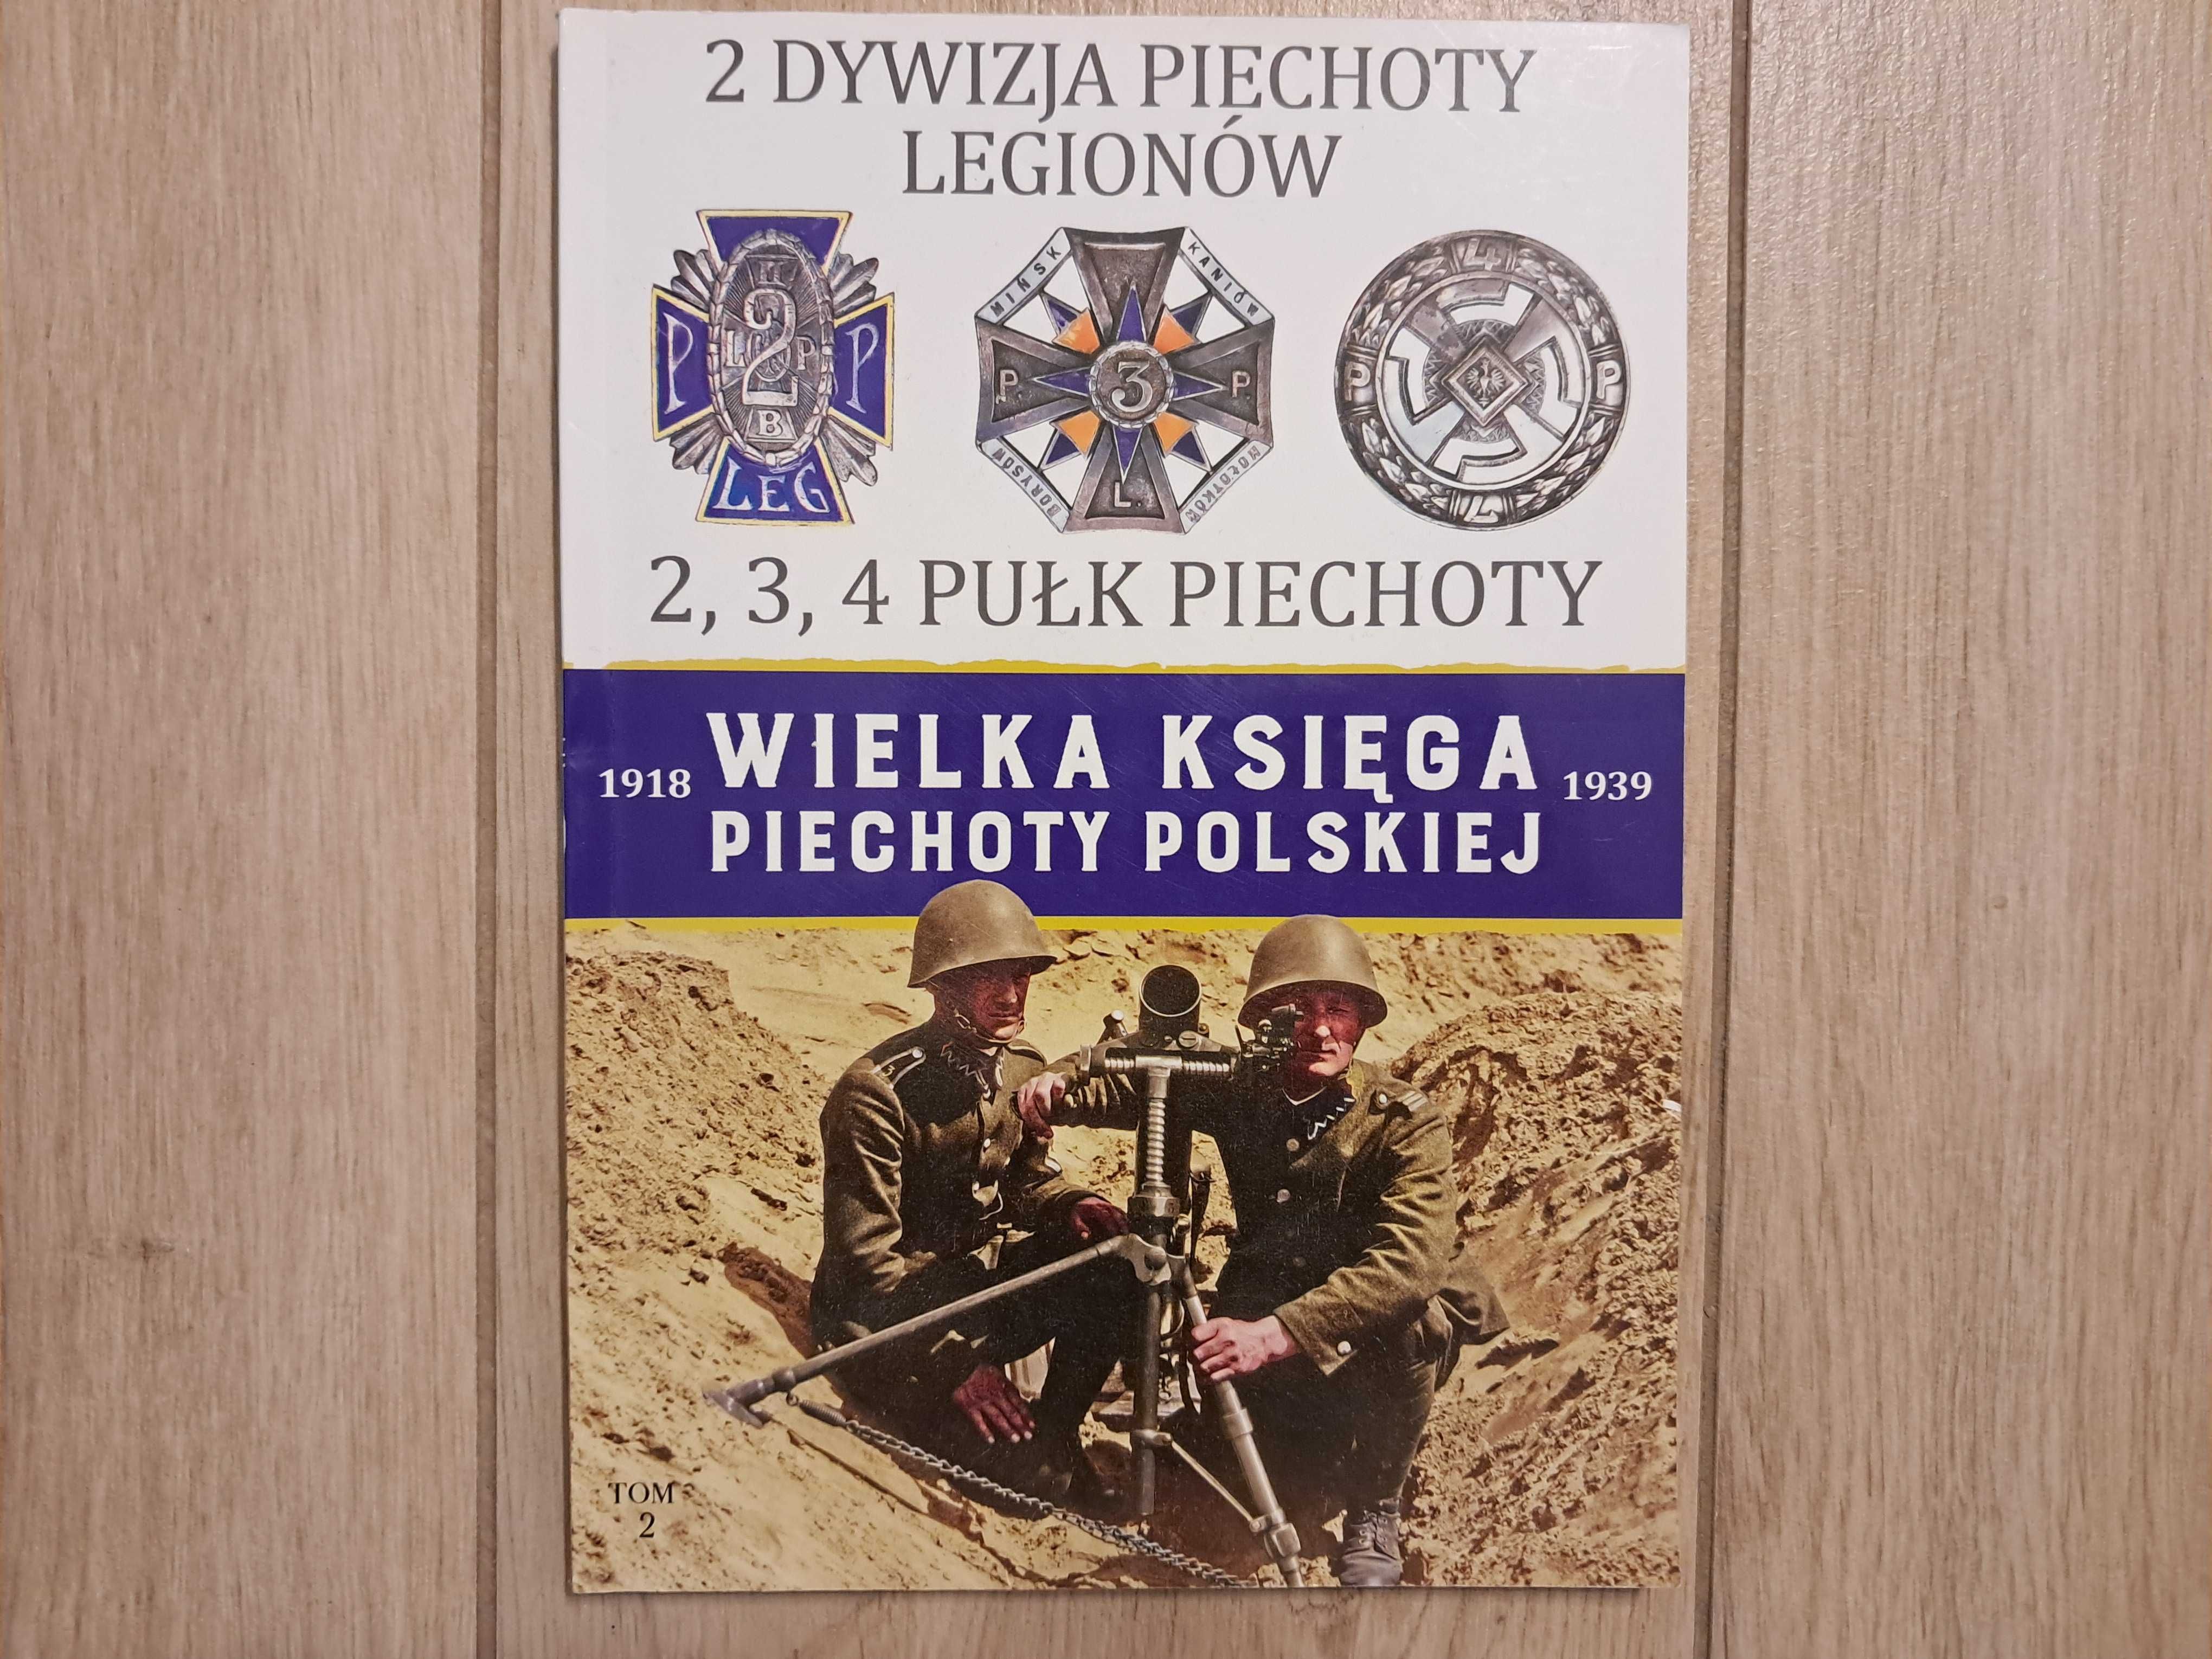 Wielka Księga Piechoty Polskiej - tom 2 - 2 Dywizja Legionów